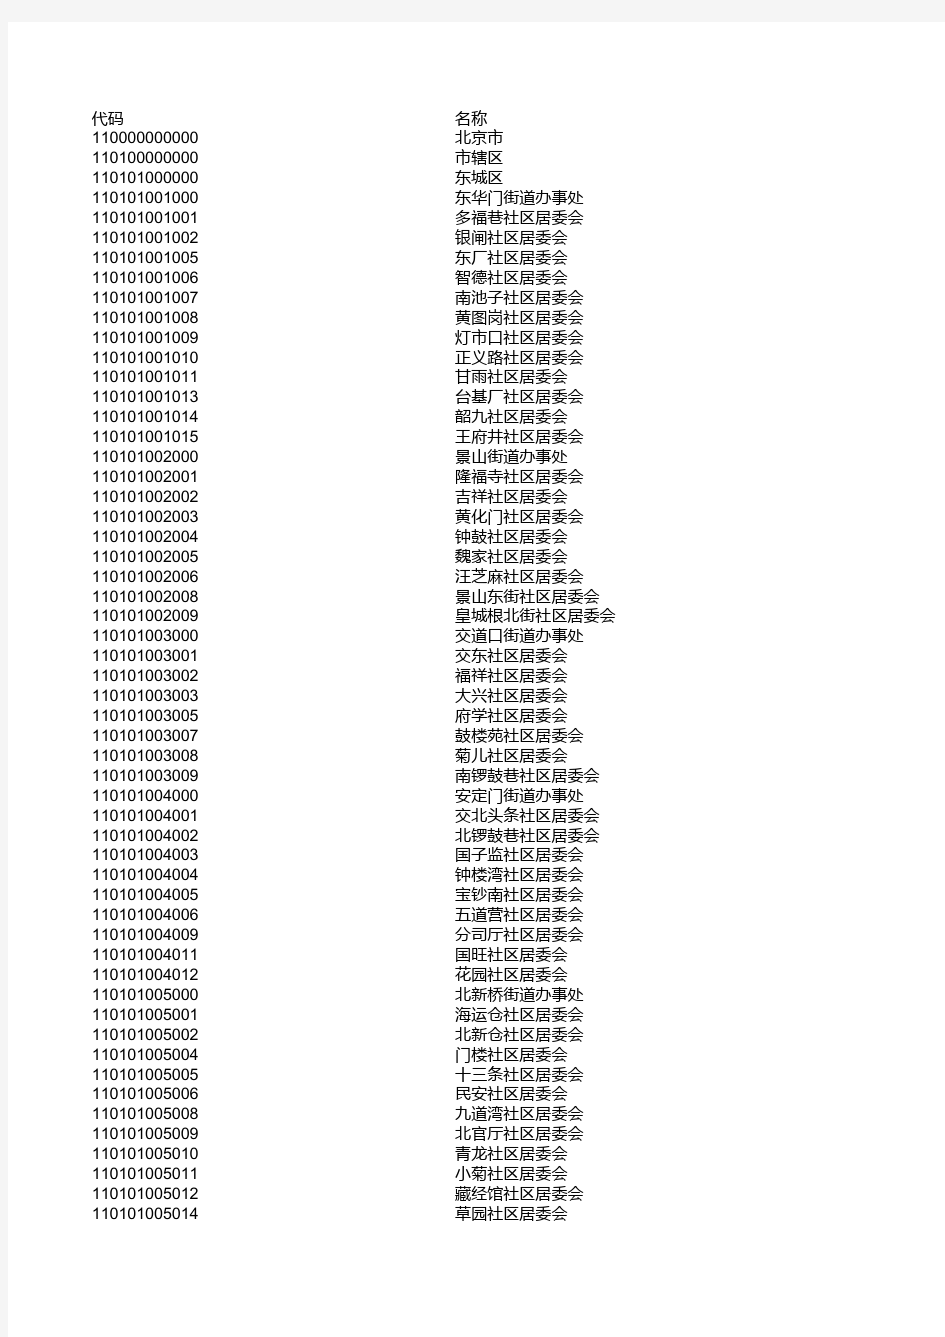 北京市行政区划代码表